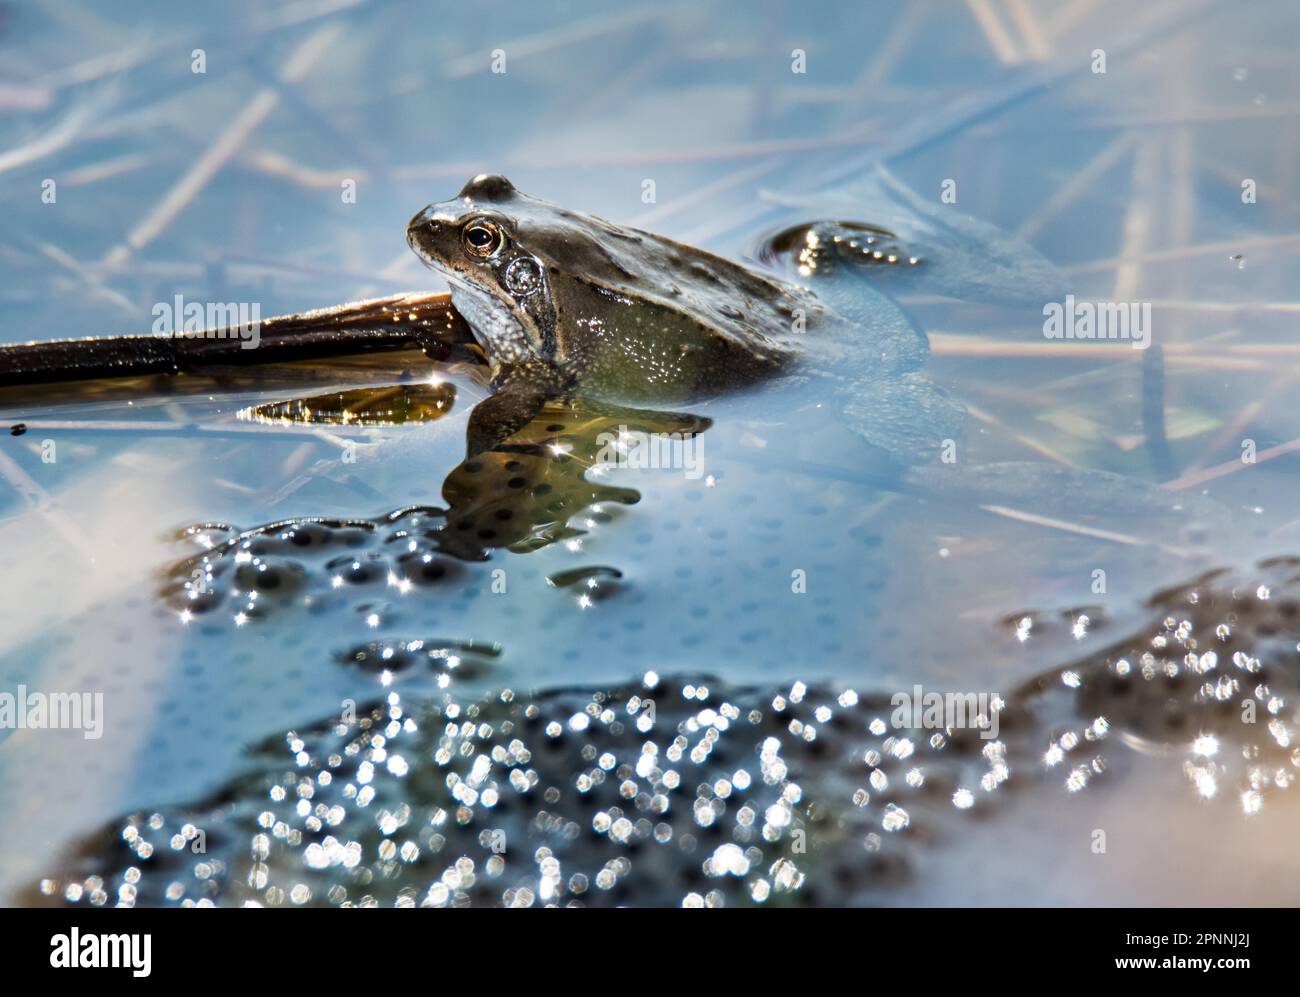 Frosch in der Mitte des Frosch-Laich Stockfotografie - Alamy